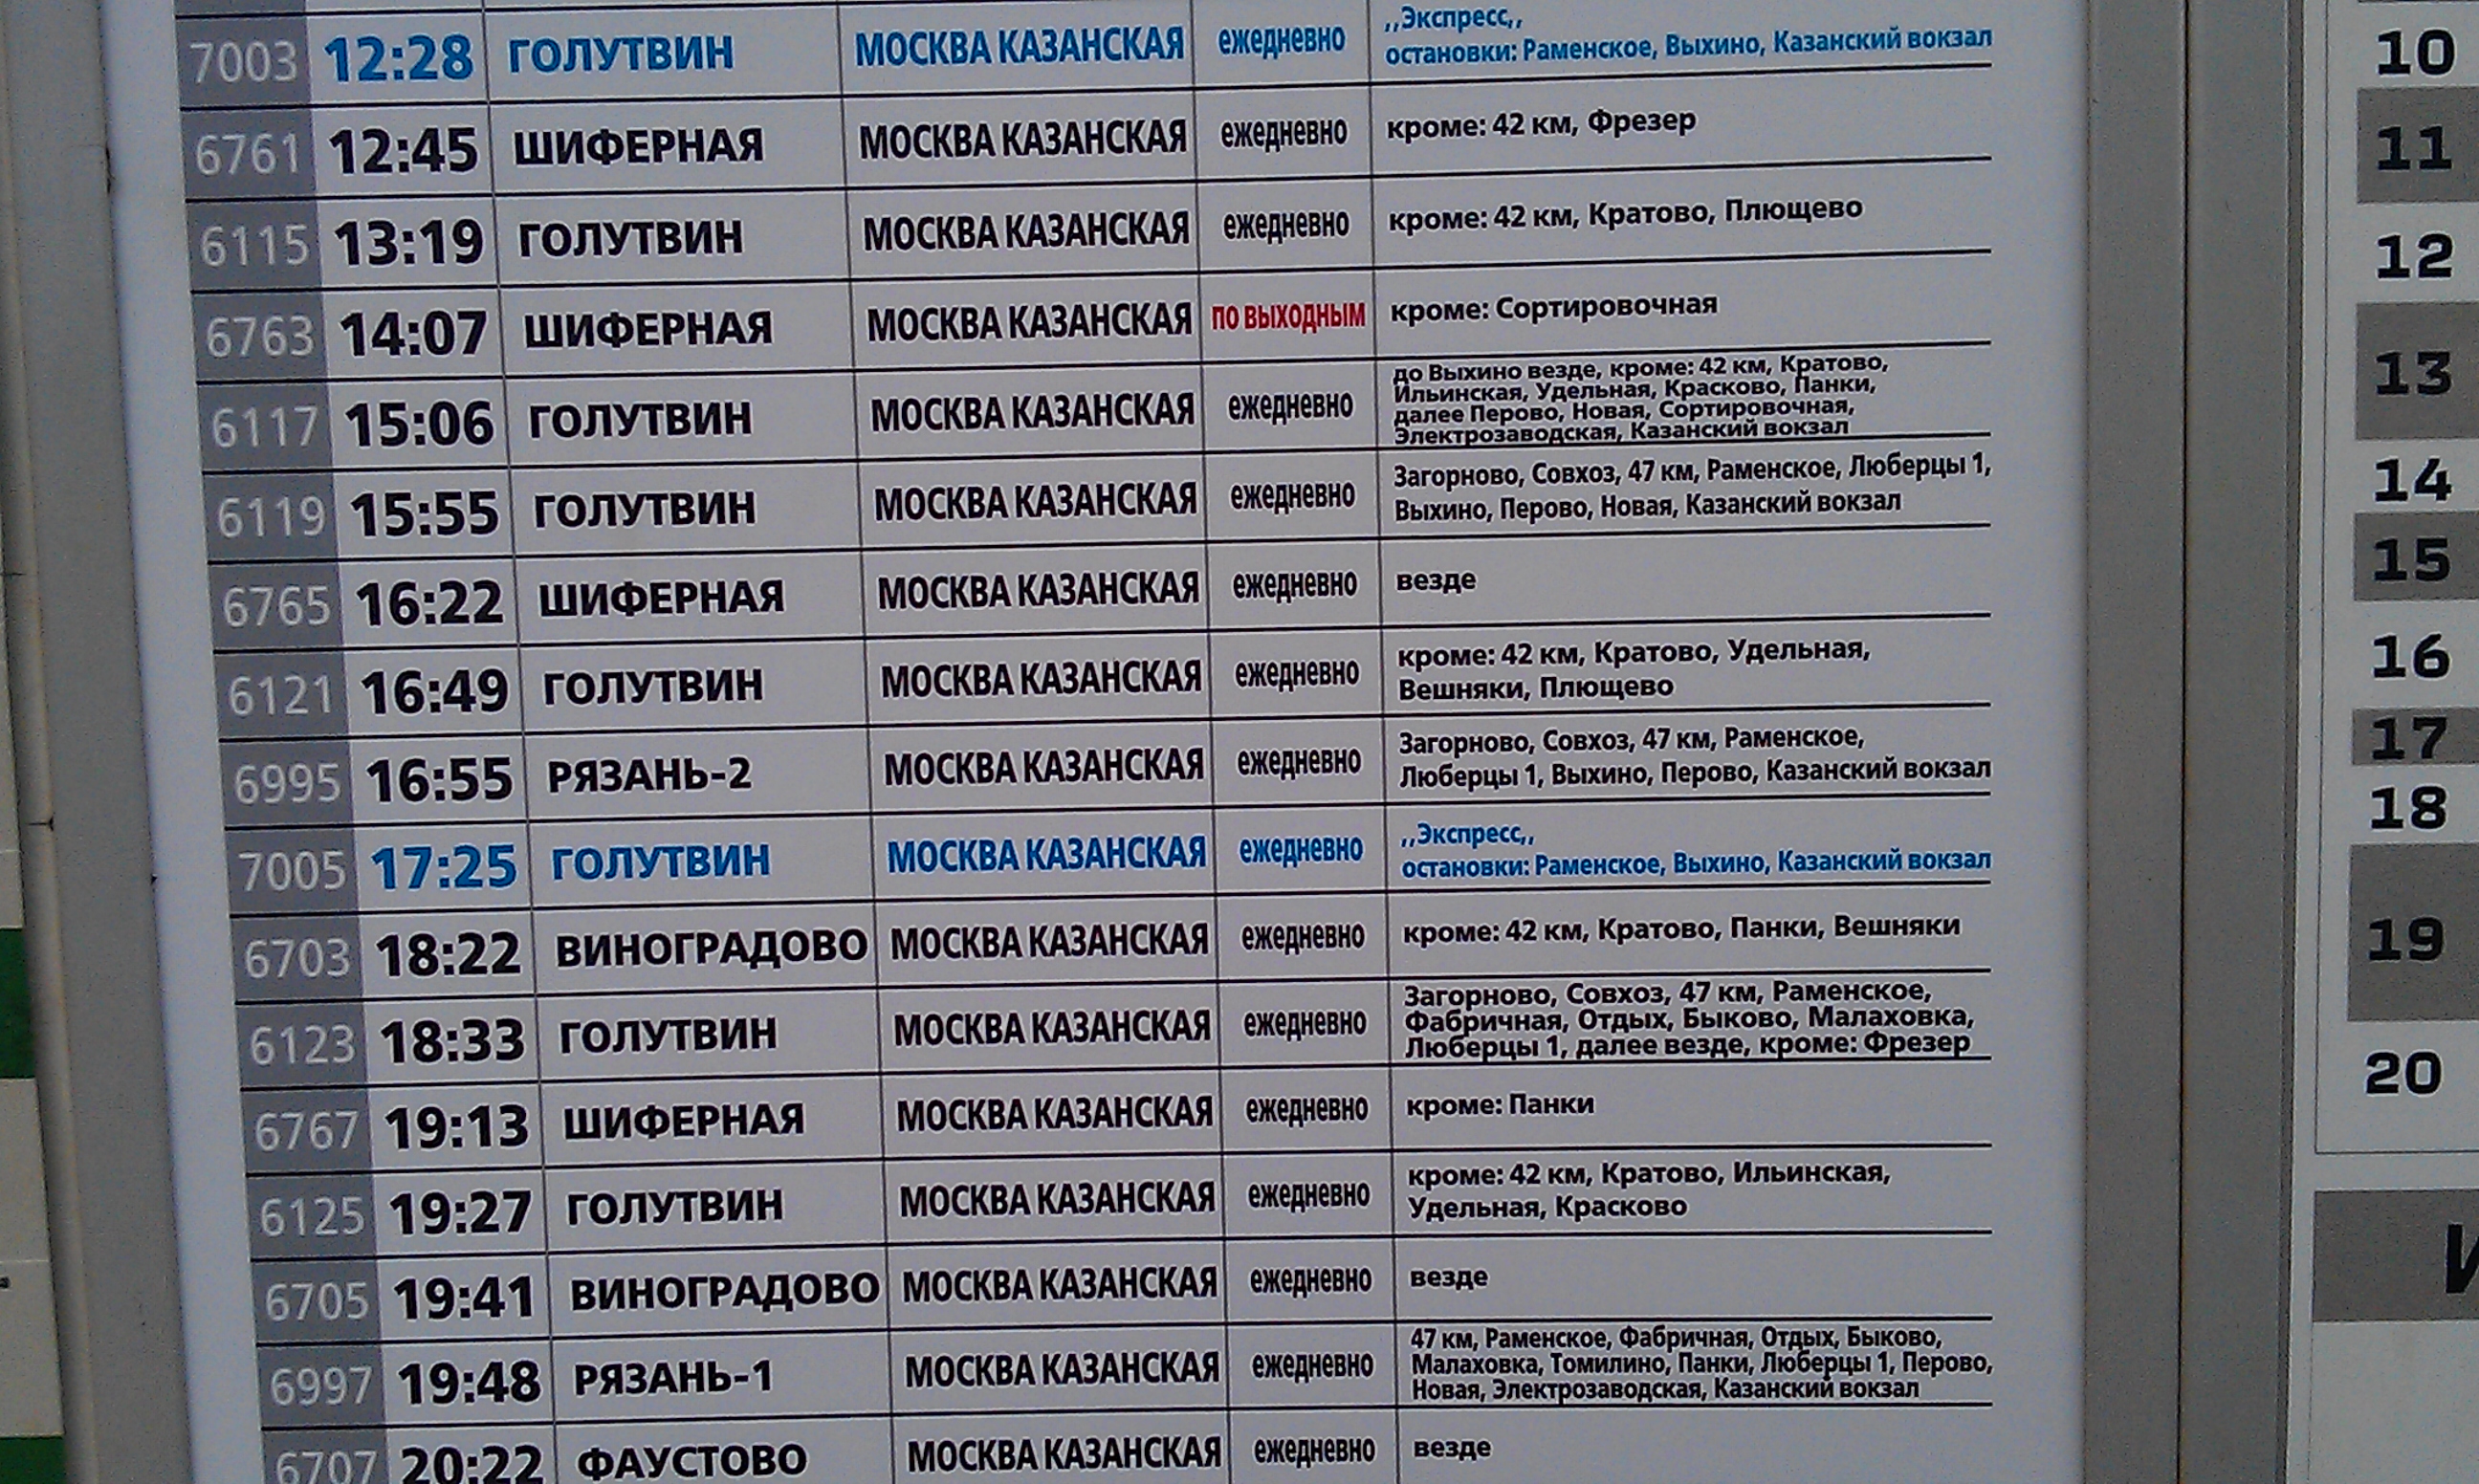 Расписание электричек 88 москва казанская на сегодня. Электрички экспресс на Голутвин с Казанского вокзала.